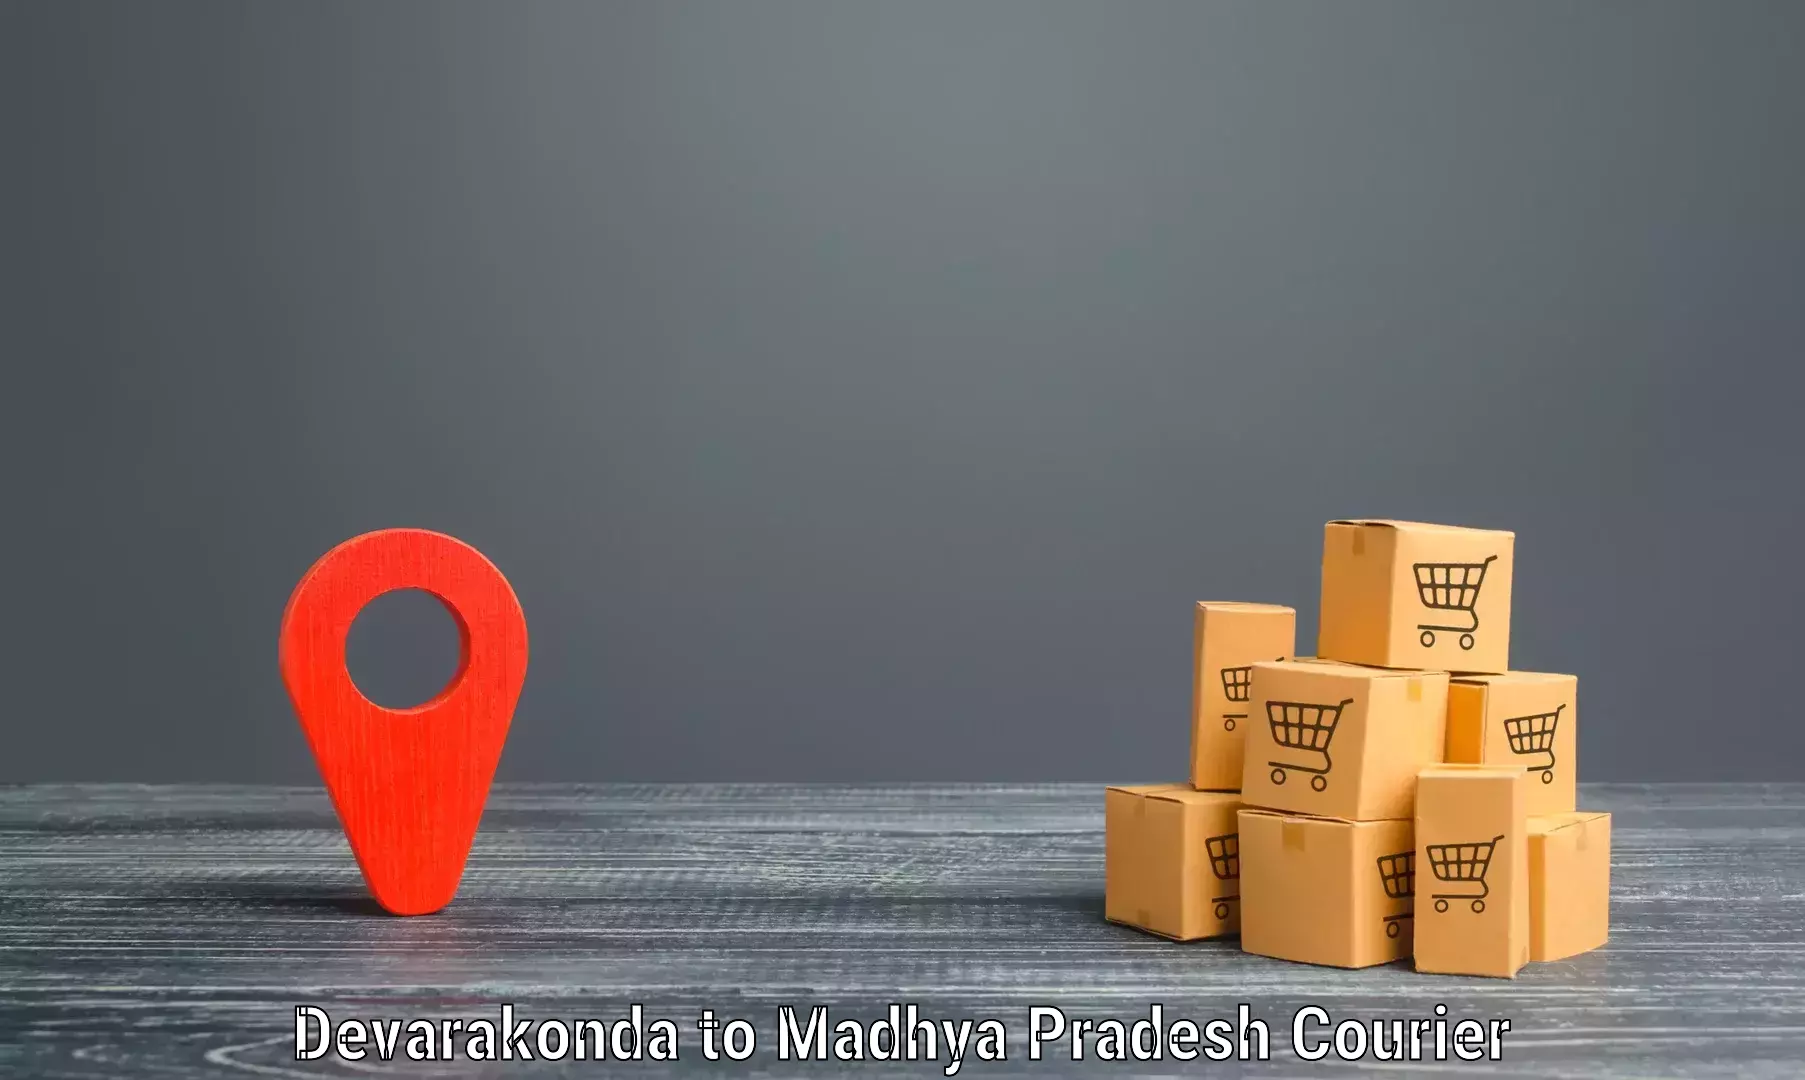 Fast-track shipping solutions Devarakonda to Shivpuri